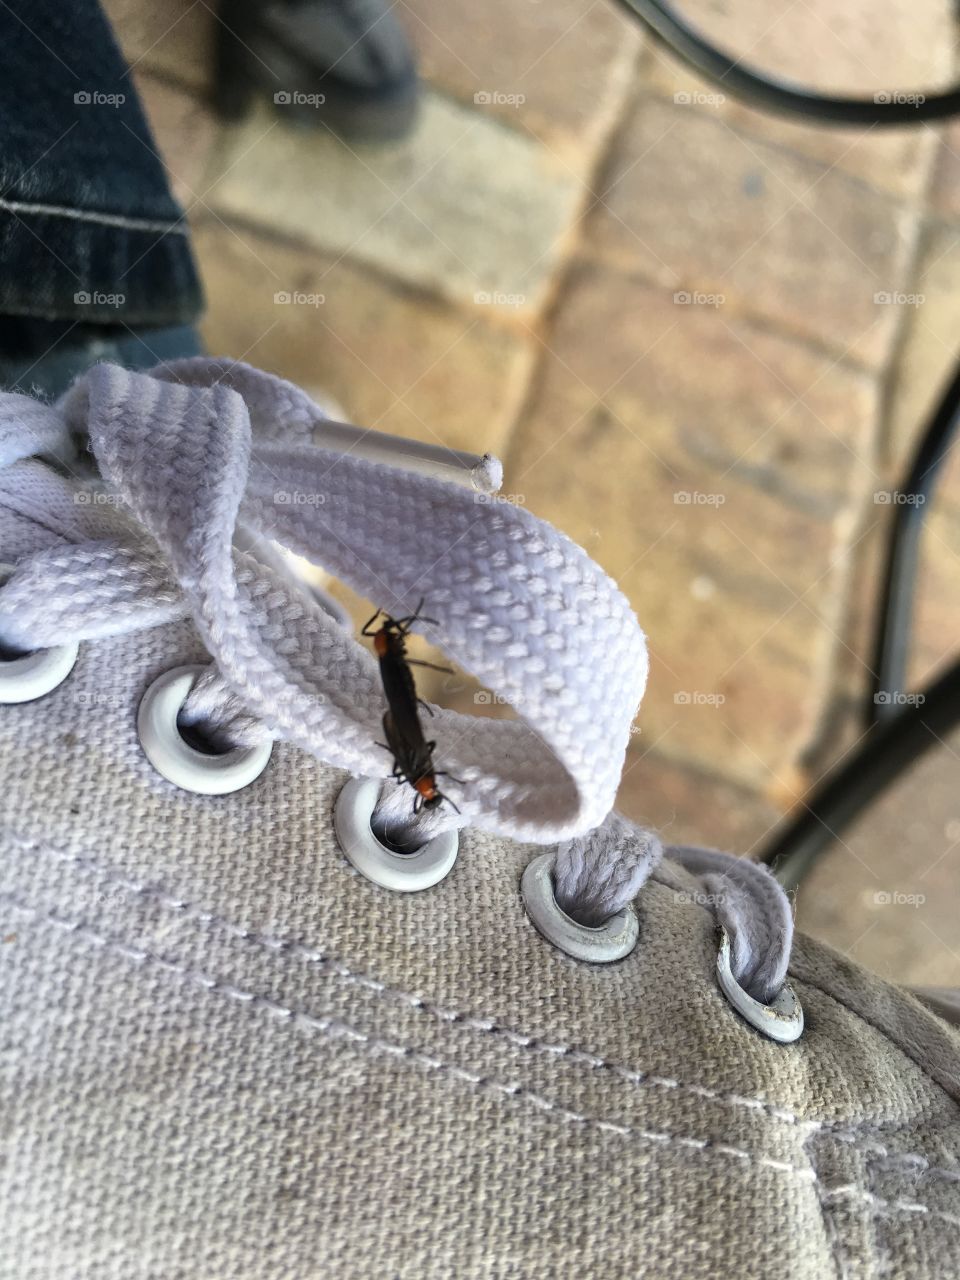 Love bugs on my sneaker 